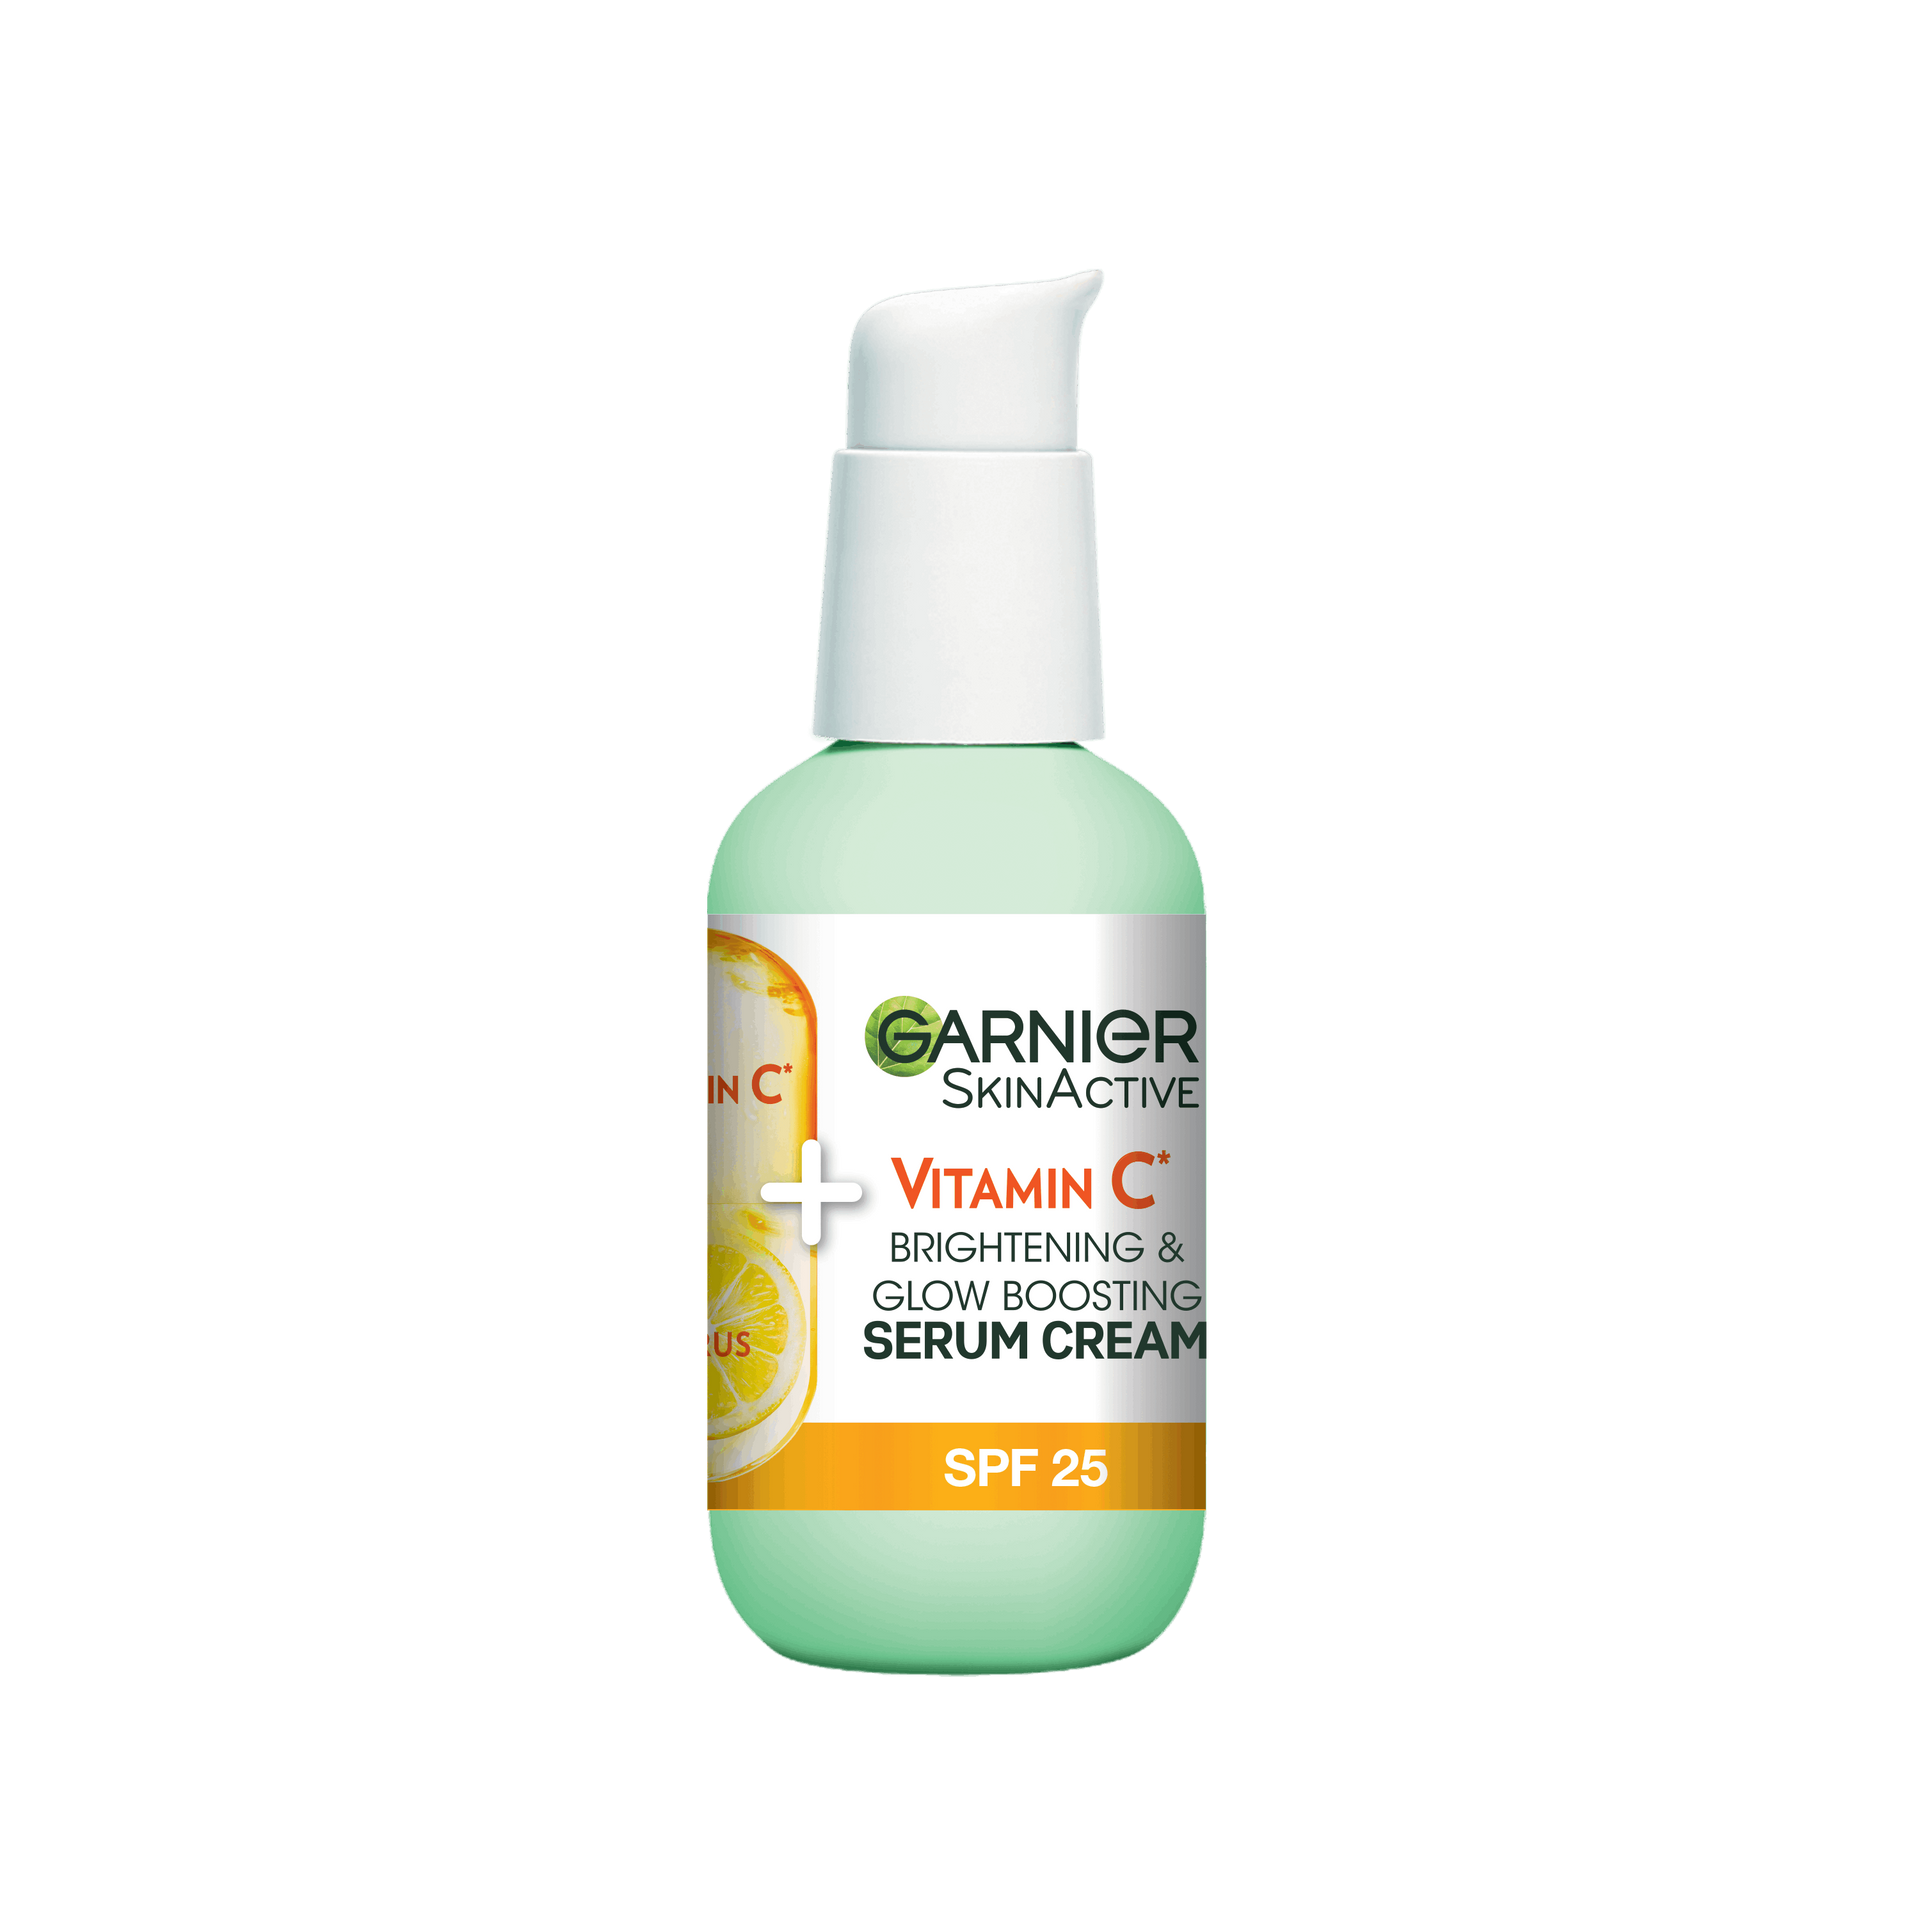 Garnier SkinActive Vitamin C serum cream 50ml bottle front